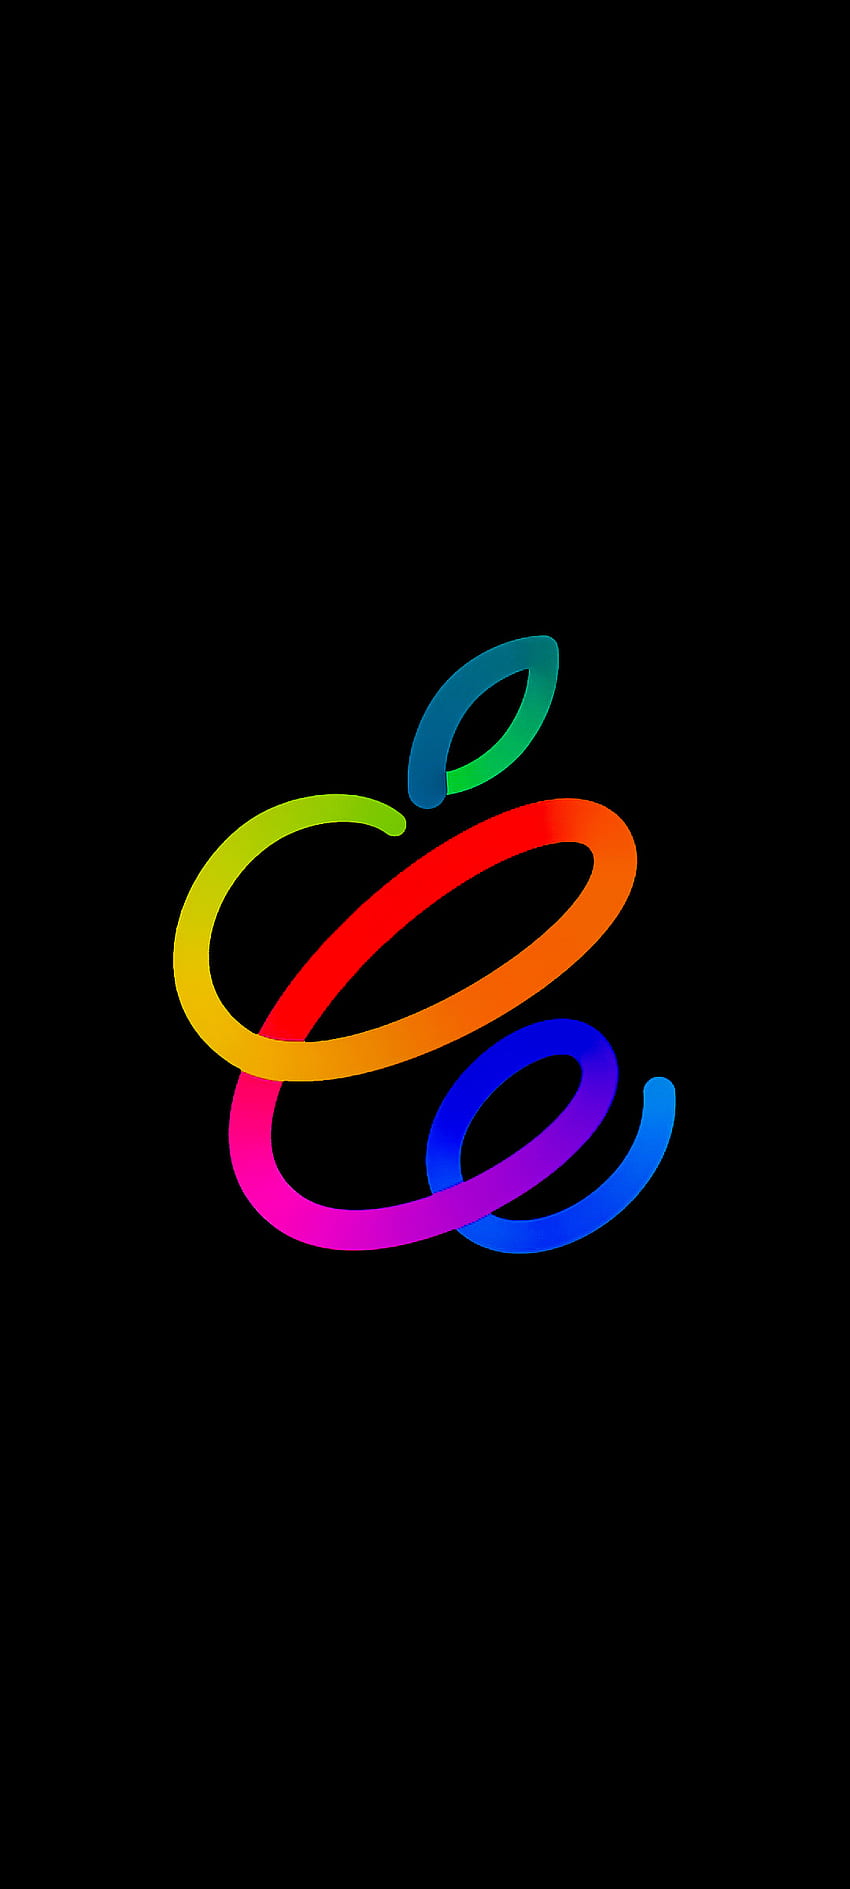 Apple Event Spring, negro, oled, tecnología, ios, amoled, diseño, oscuro, colorido fondo de pantalla del teléfono